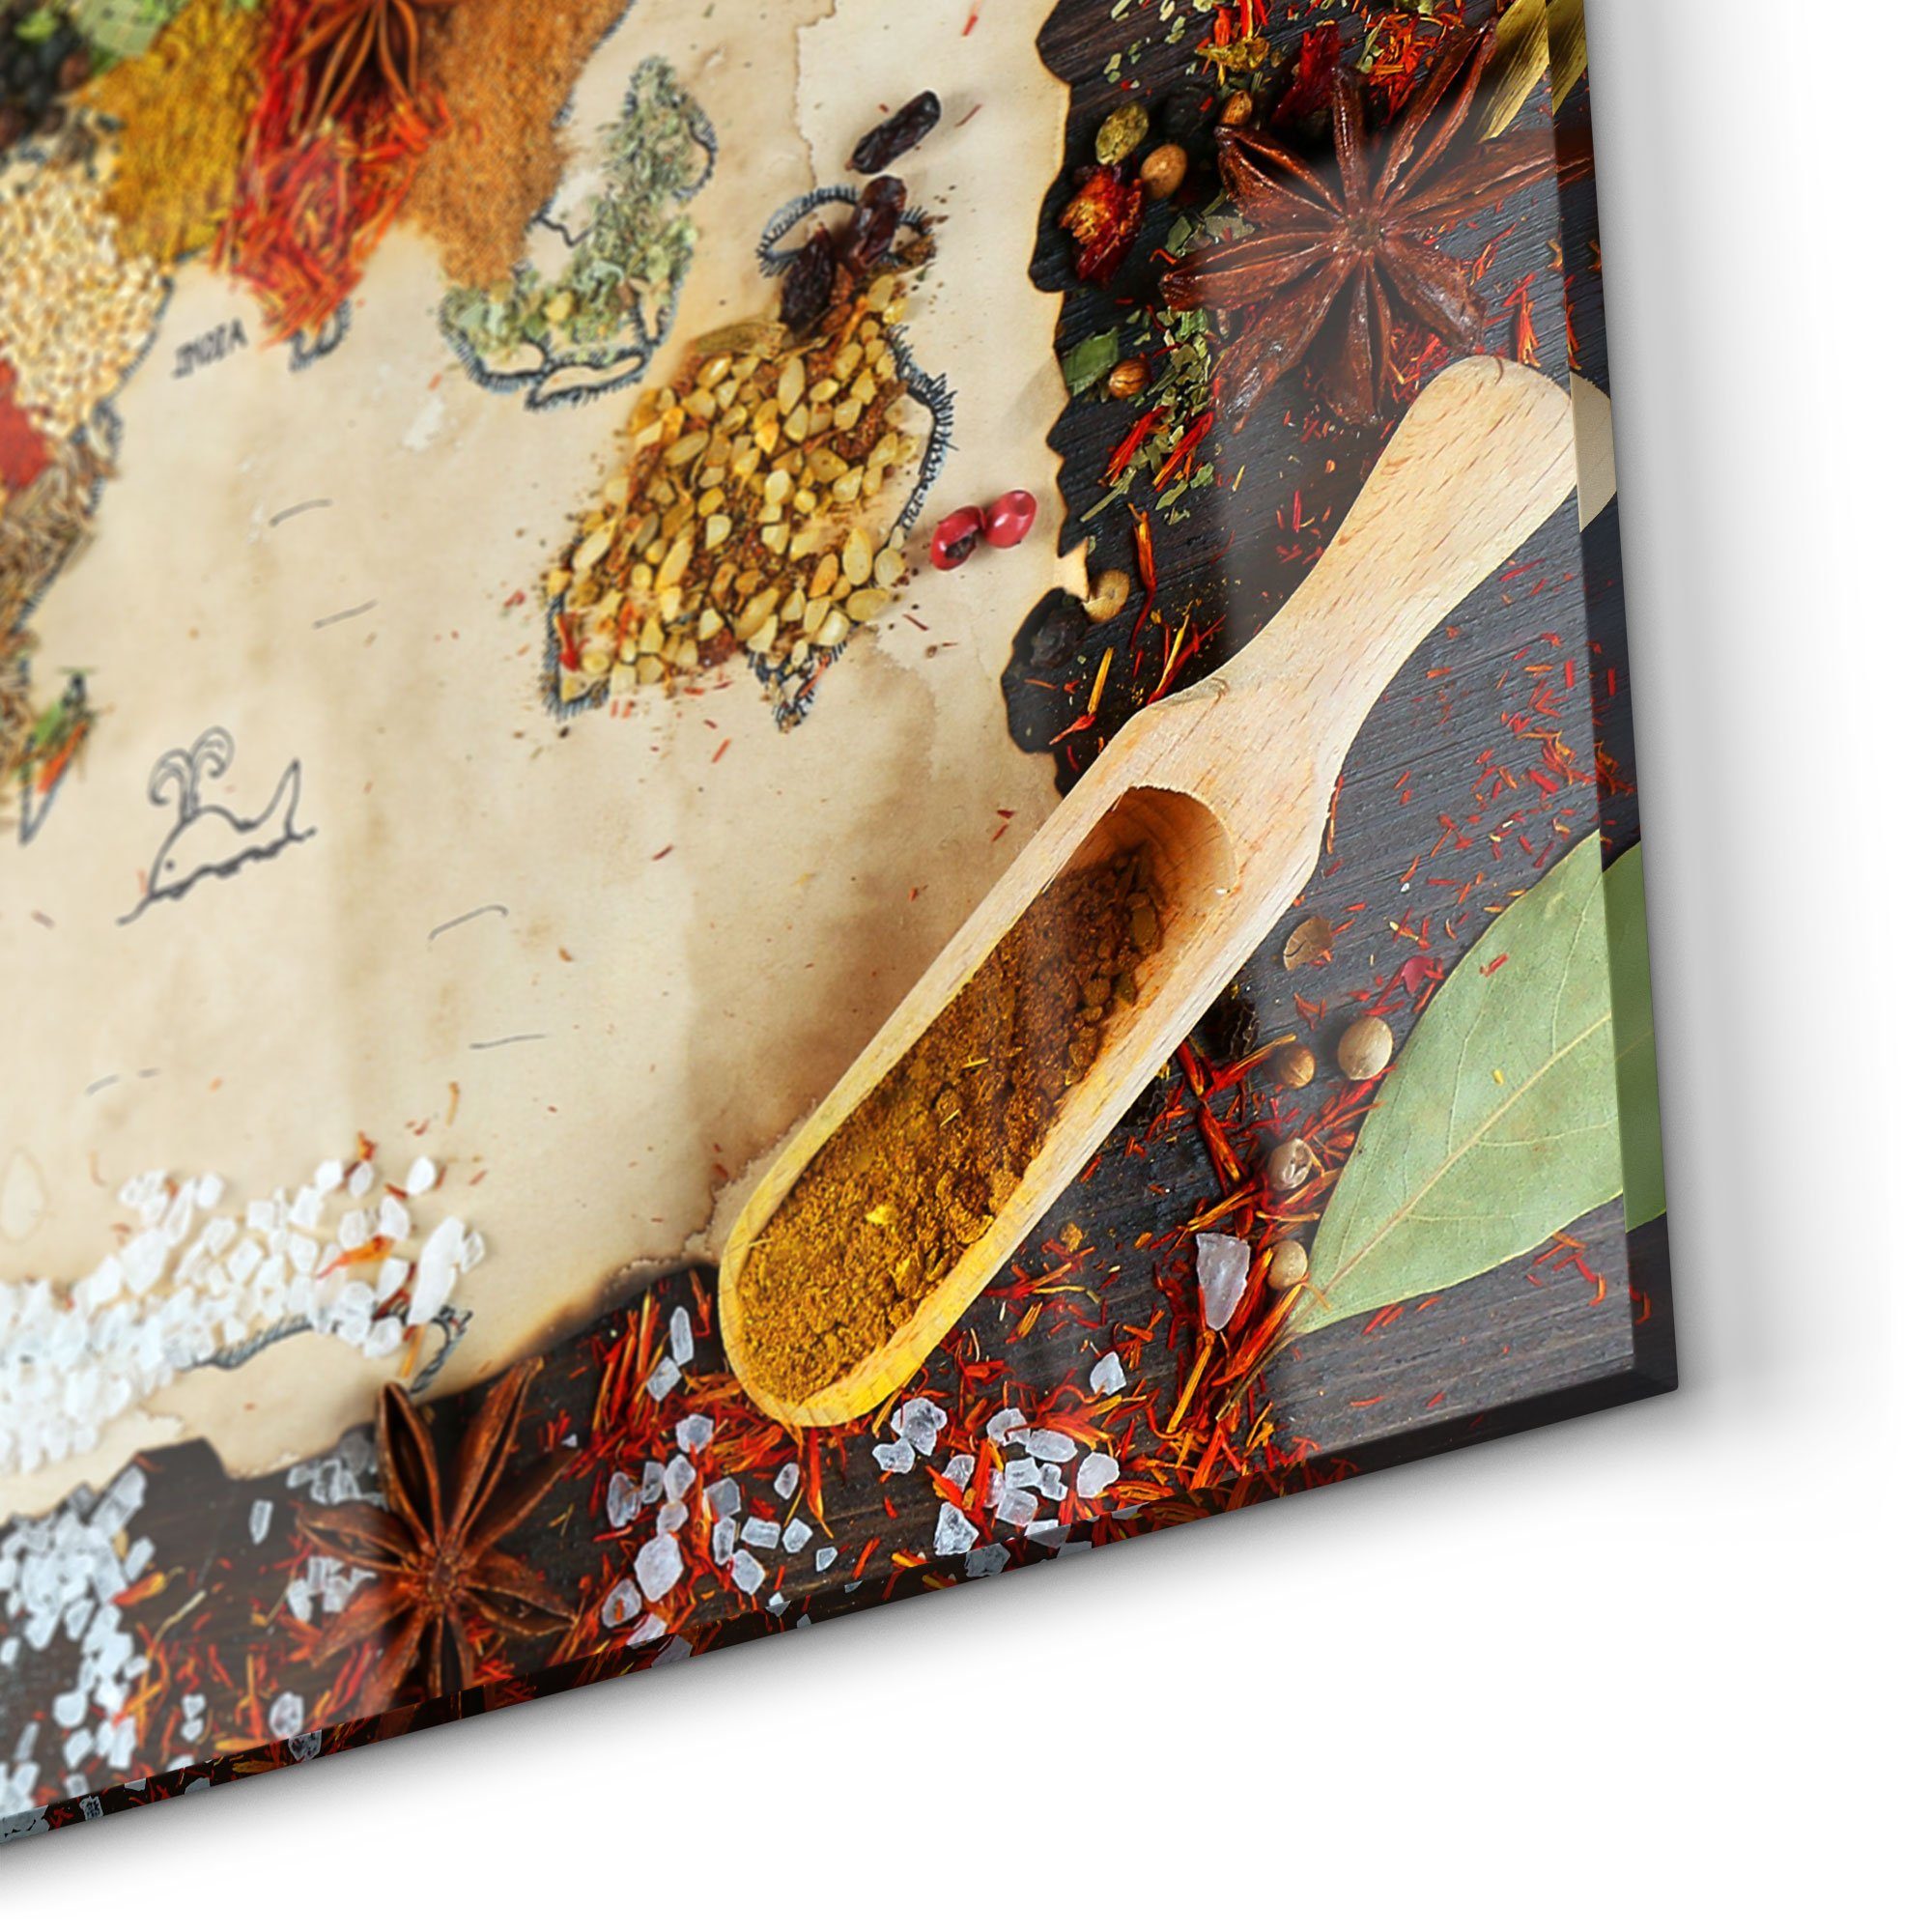 DEQORI Küchenrückwand 'Weltkarte aus Badrückwand Herdblende Gewürzen', Glas Spritzschutz